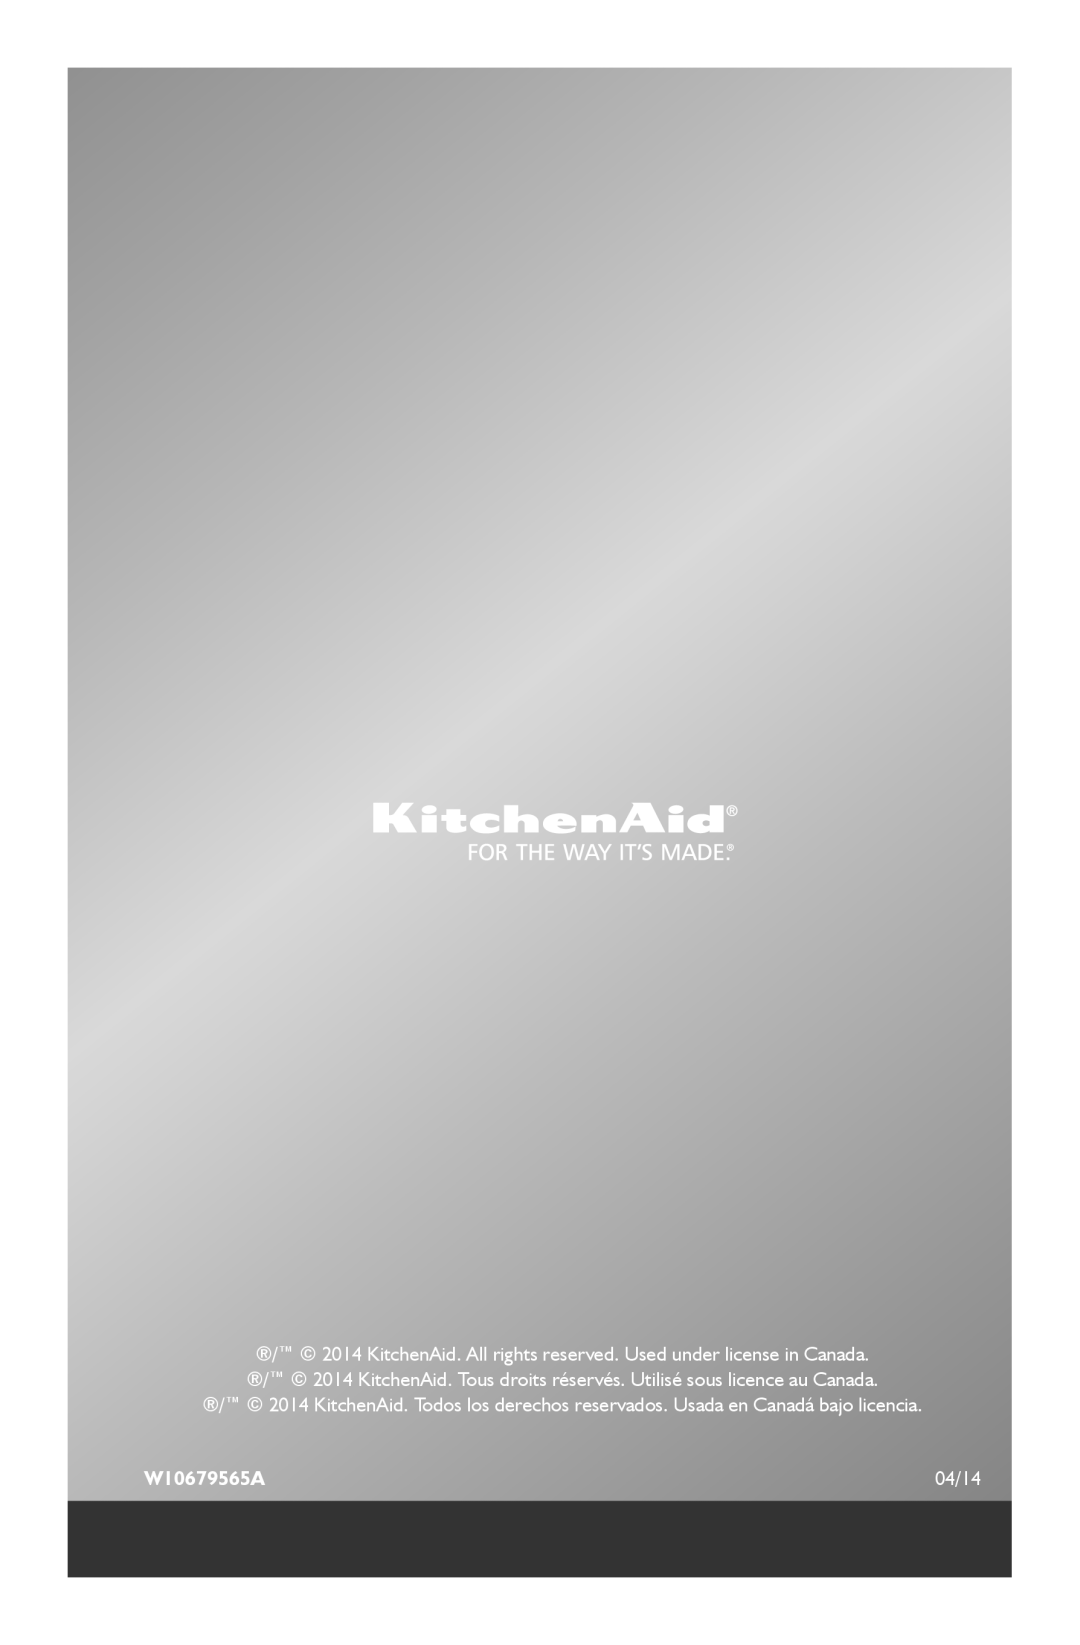 KitchenAid KFP1133 manual W10679565A, 04/14 